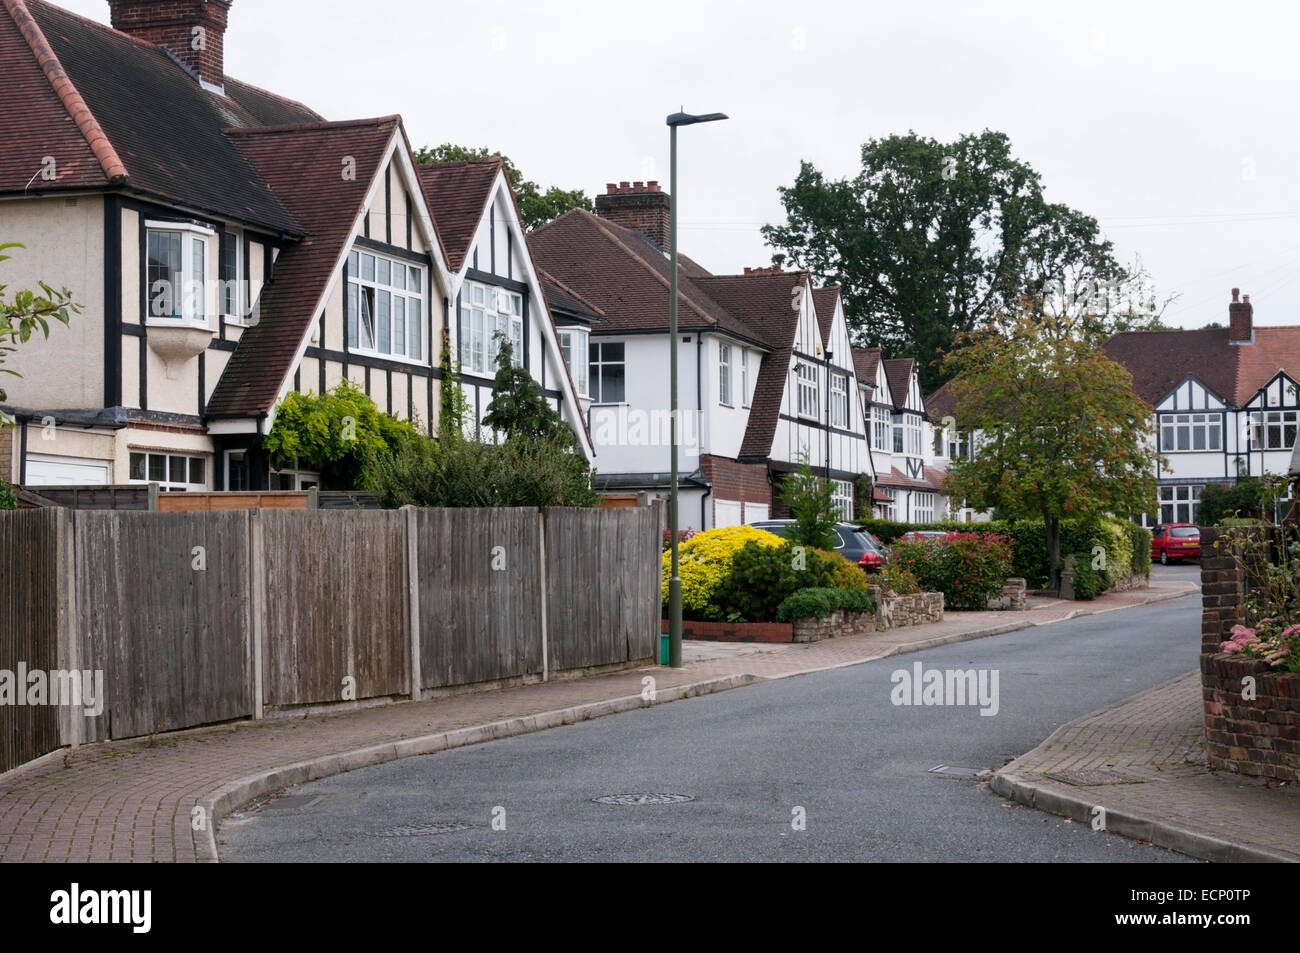 Häuser in eine schmale suburban Straße.  Druiden Weg in Bromley, Südlondon. Stockfoto